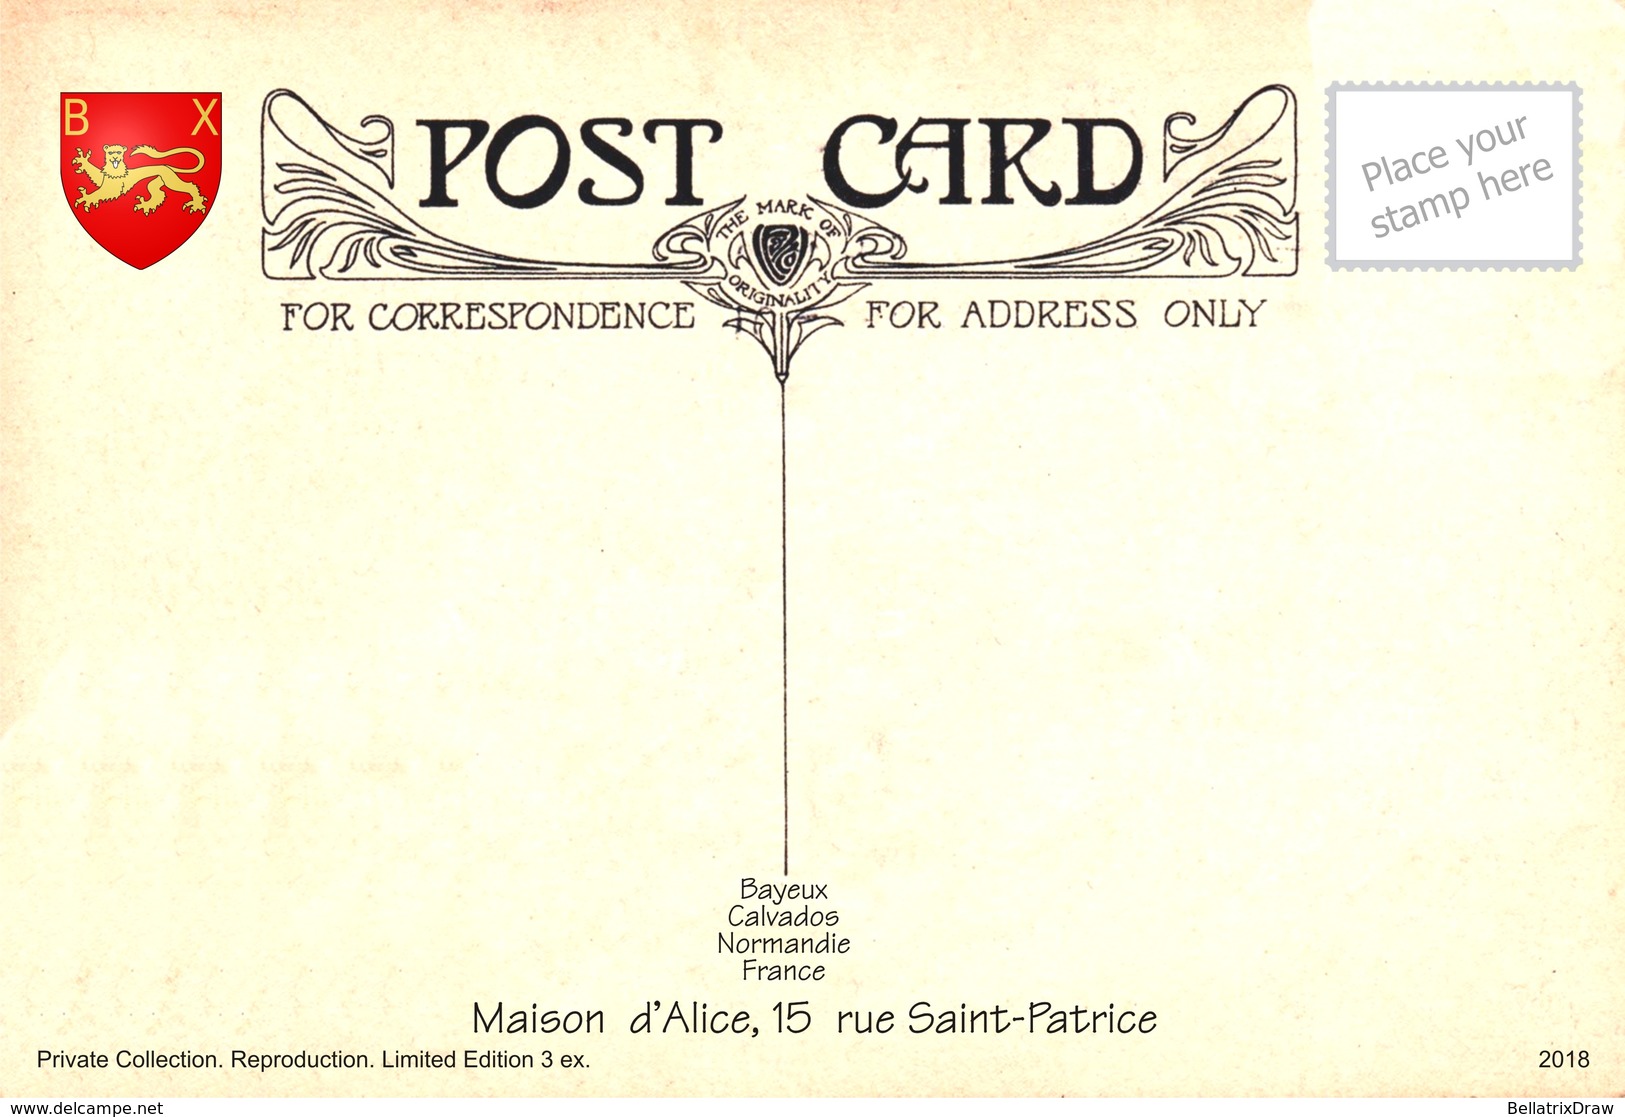 Postcards, REPRODUCTION, Communes of France, Bayeux, duplex VIII, 54 pcs. (338-391)